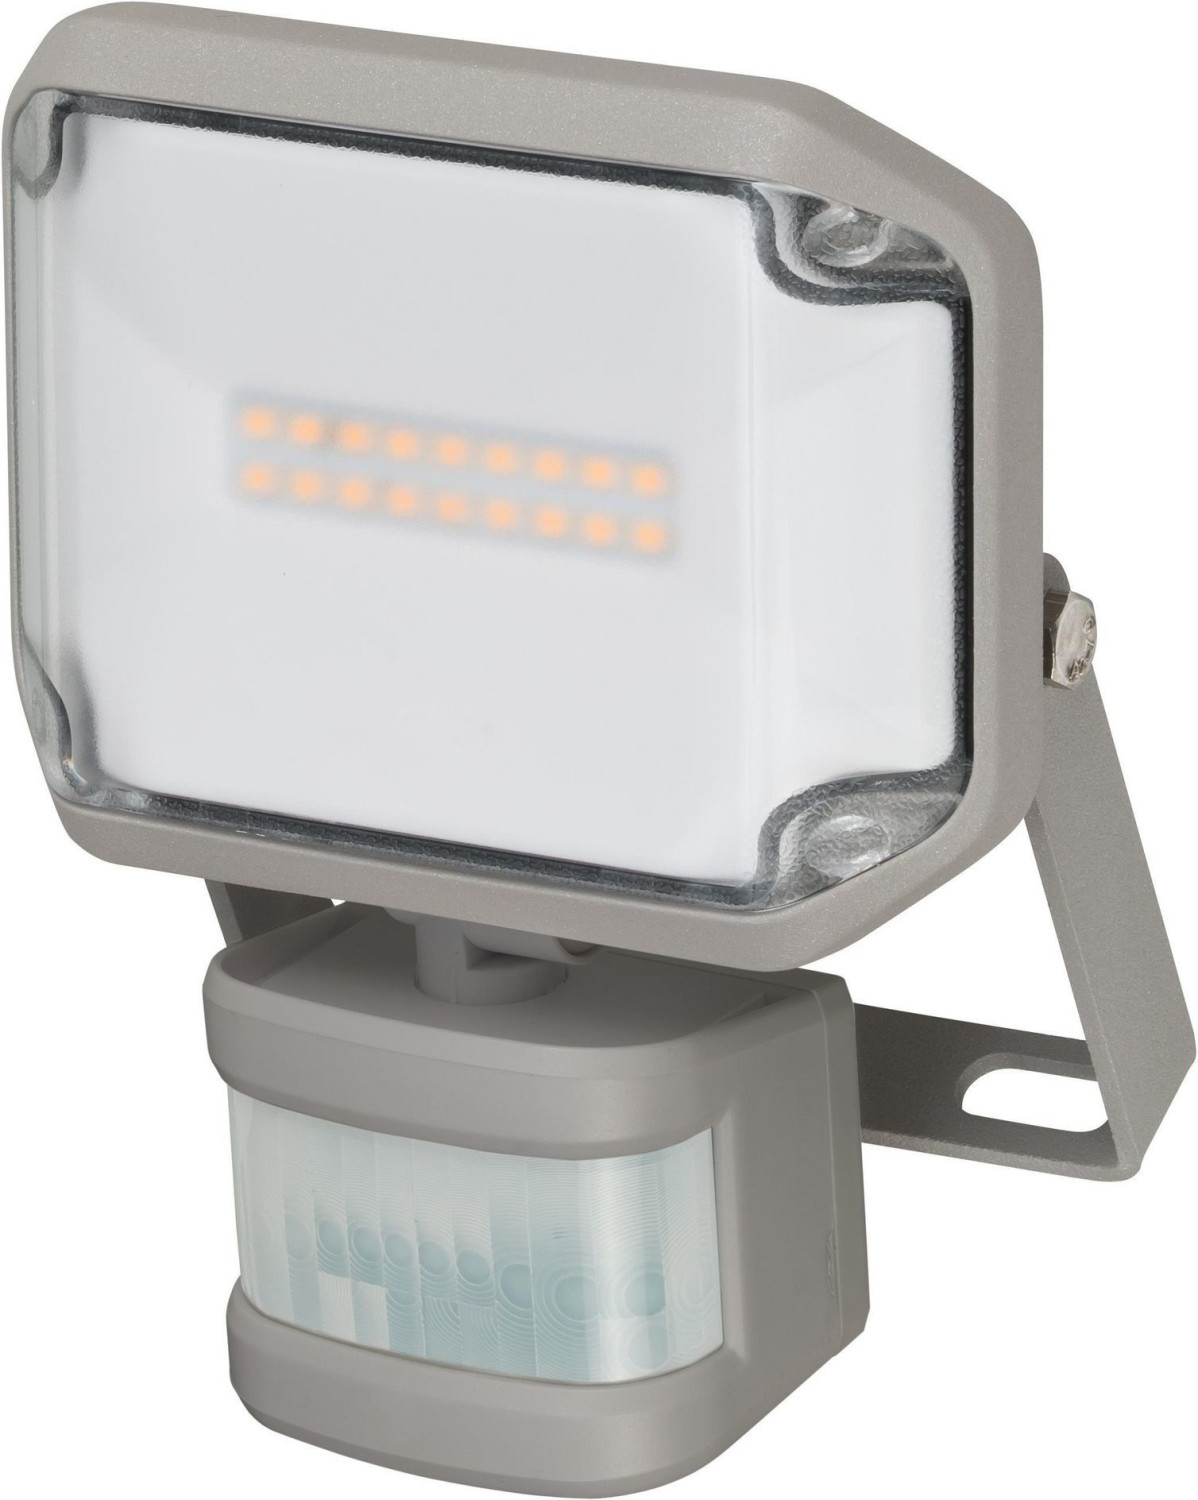 Projecteur LED extérieur JARO 1060 P avec détecteur de mouvements